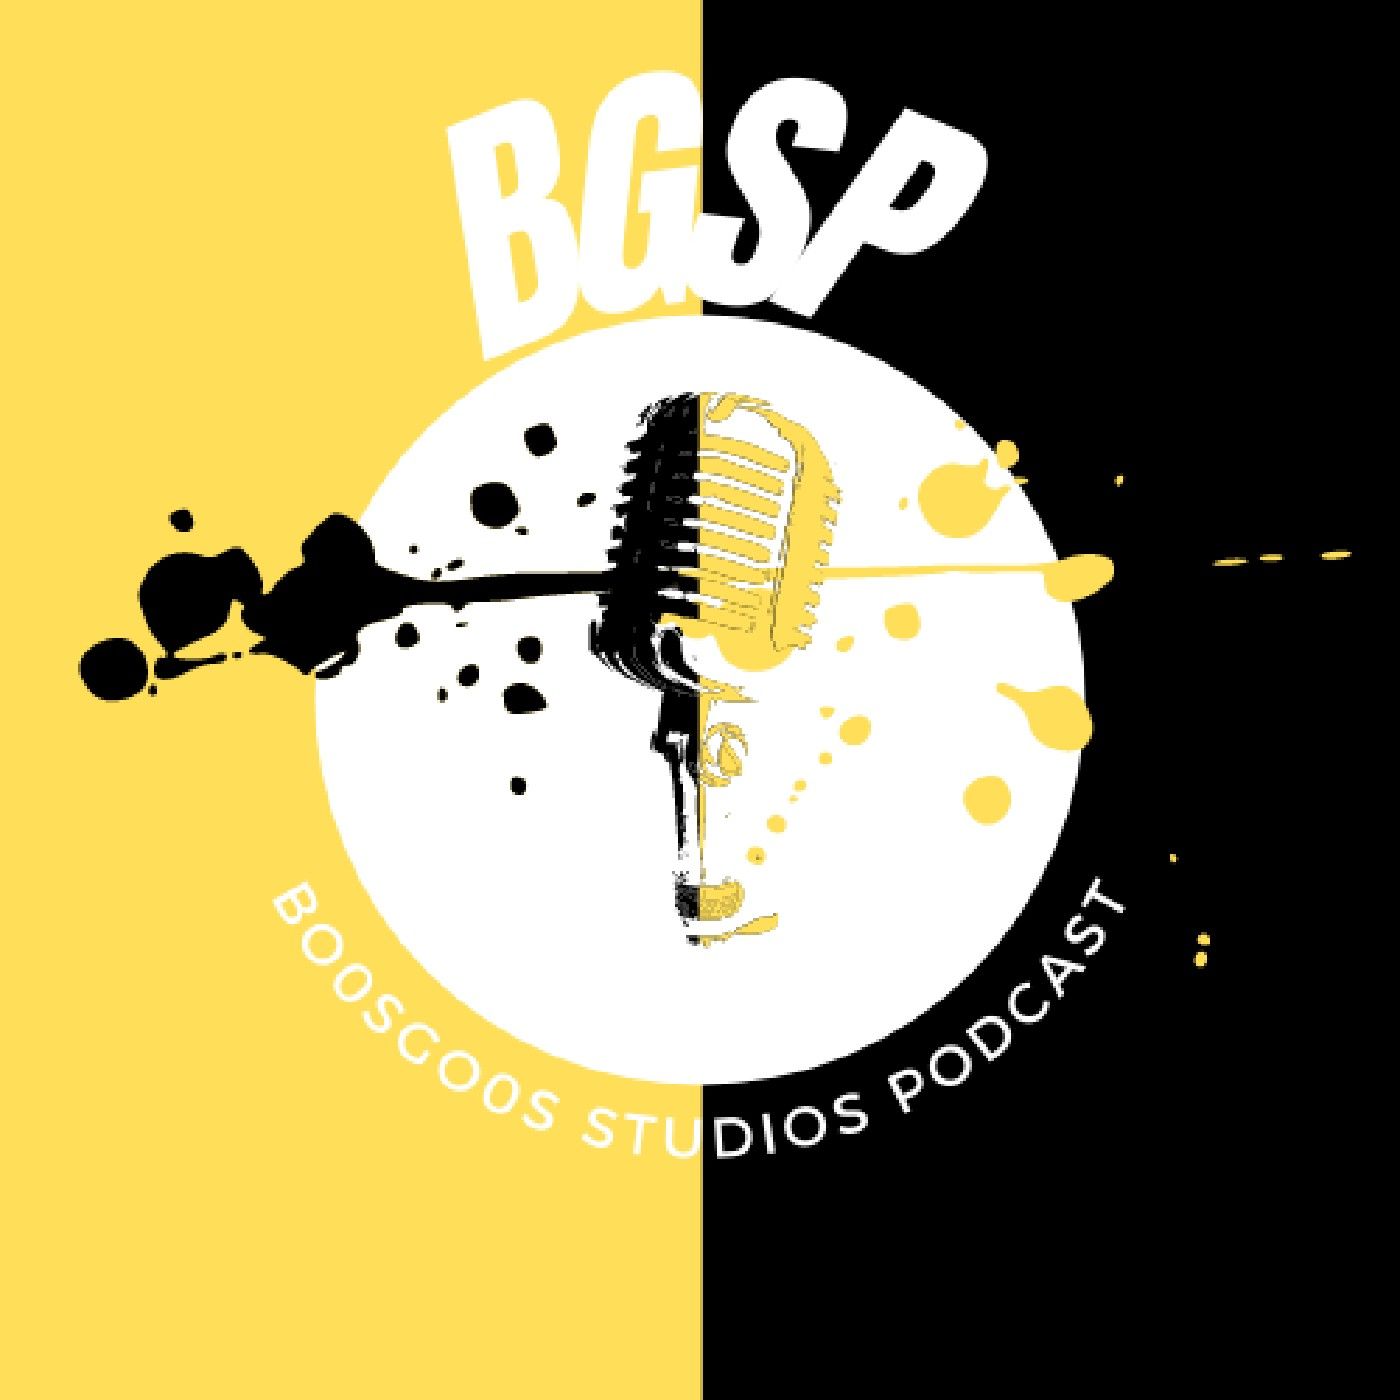 Bo0sGo0s Studios Podcast